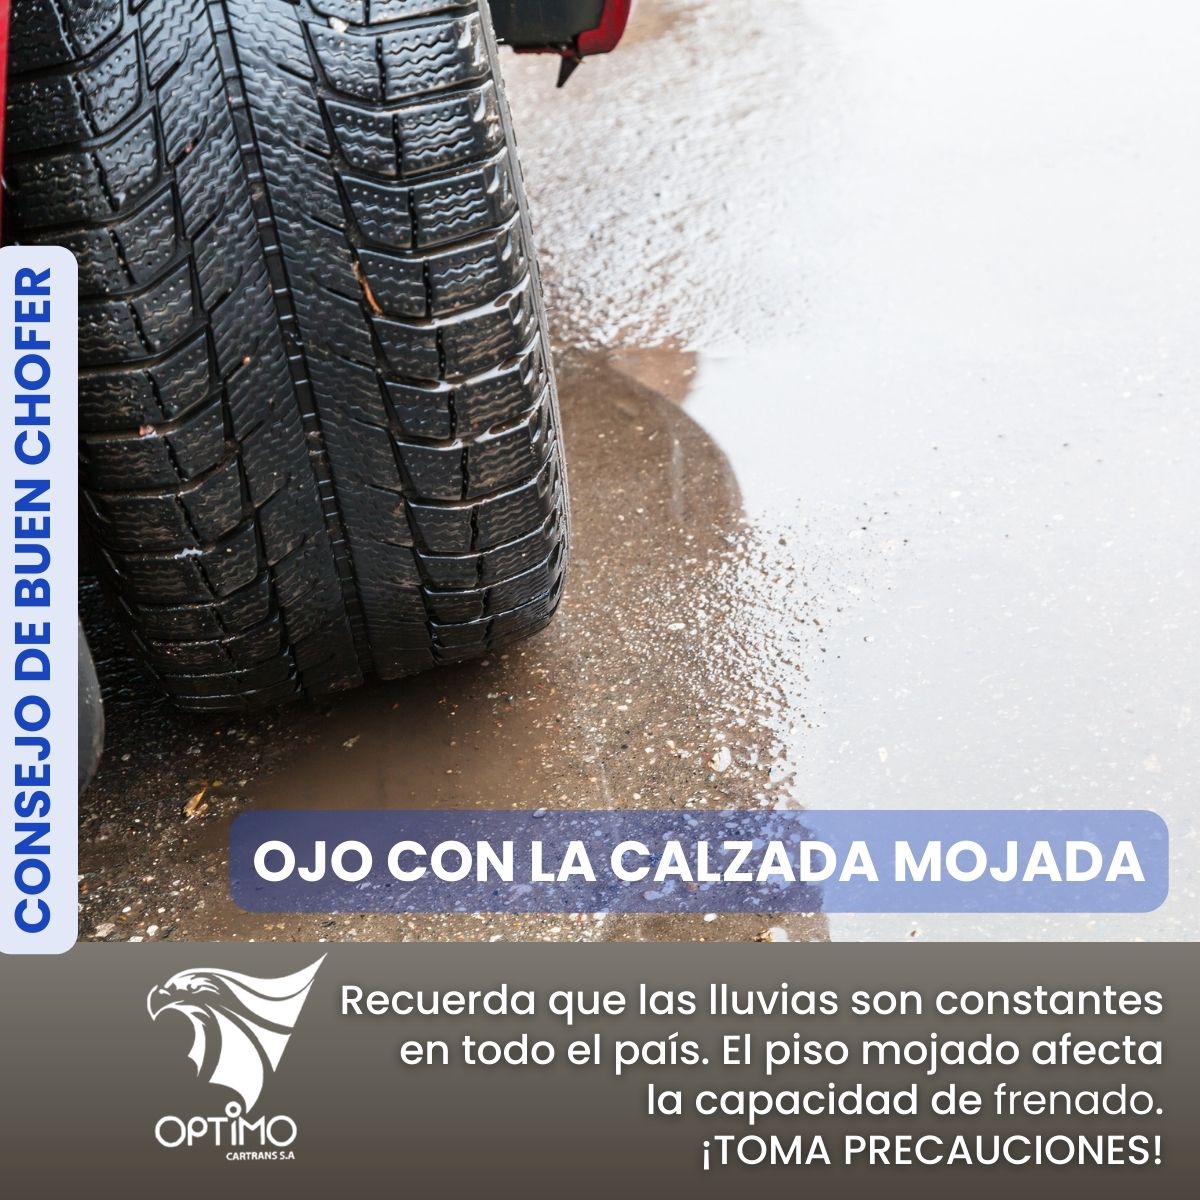 Un auto, un camión es un medio de transporte para tu hogar y empresa. Dale la atención necesaria y no escatimes gastos. Un buen sistema de frenado es esencial para maniobrar con seguridad en carreteras mojadas.

#ElOro
#Perdieron
#ecuador 
#optimocartrans